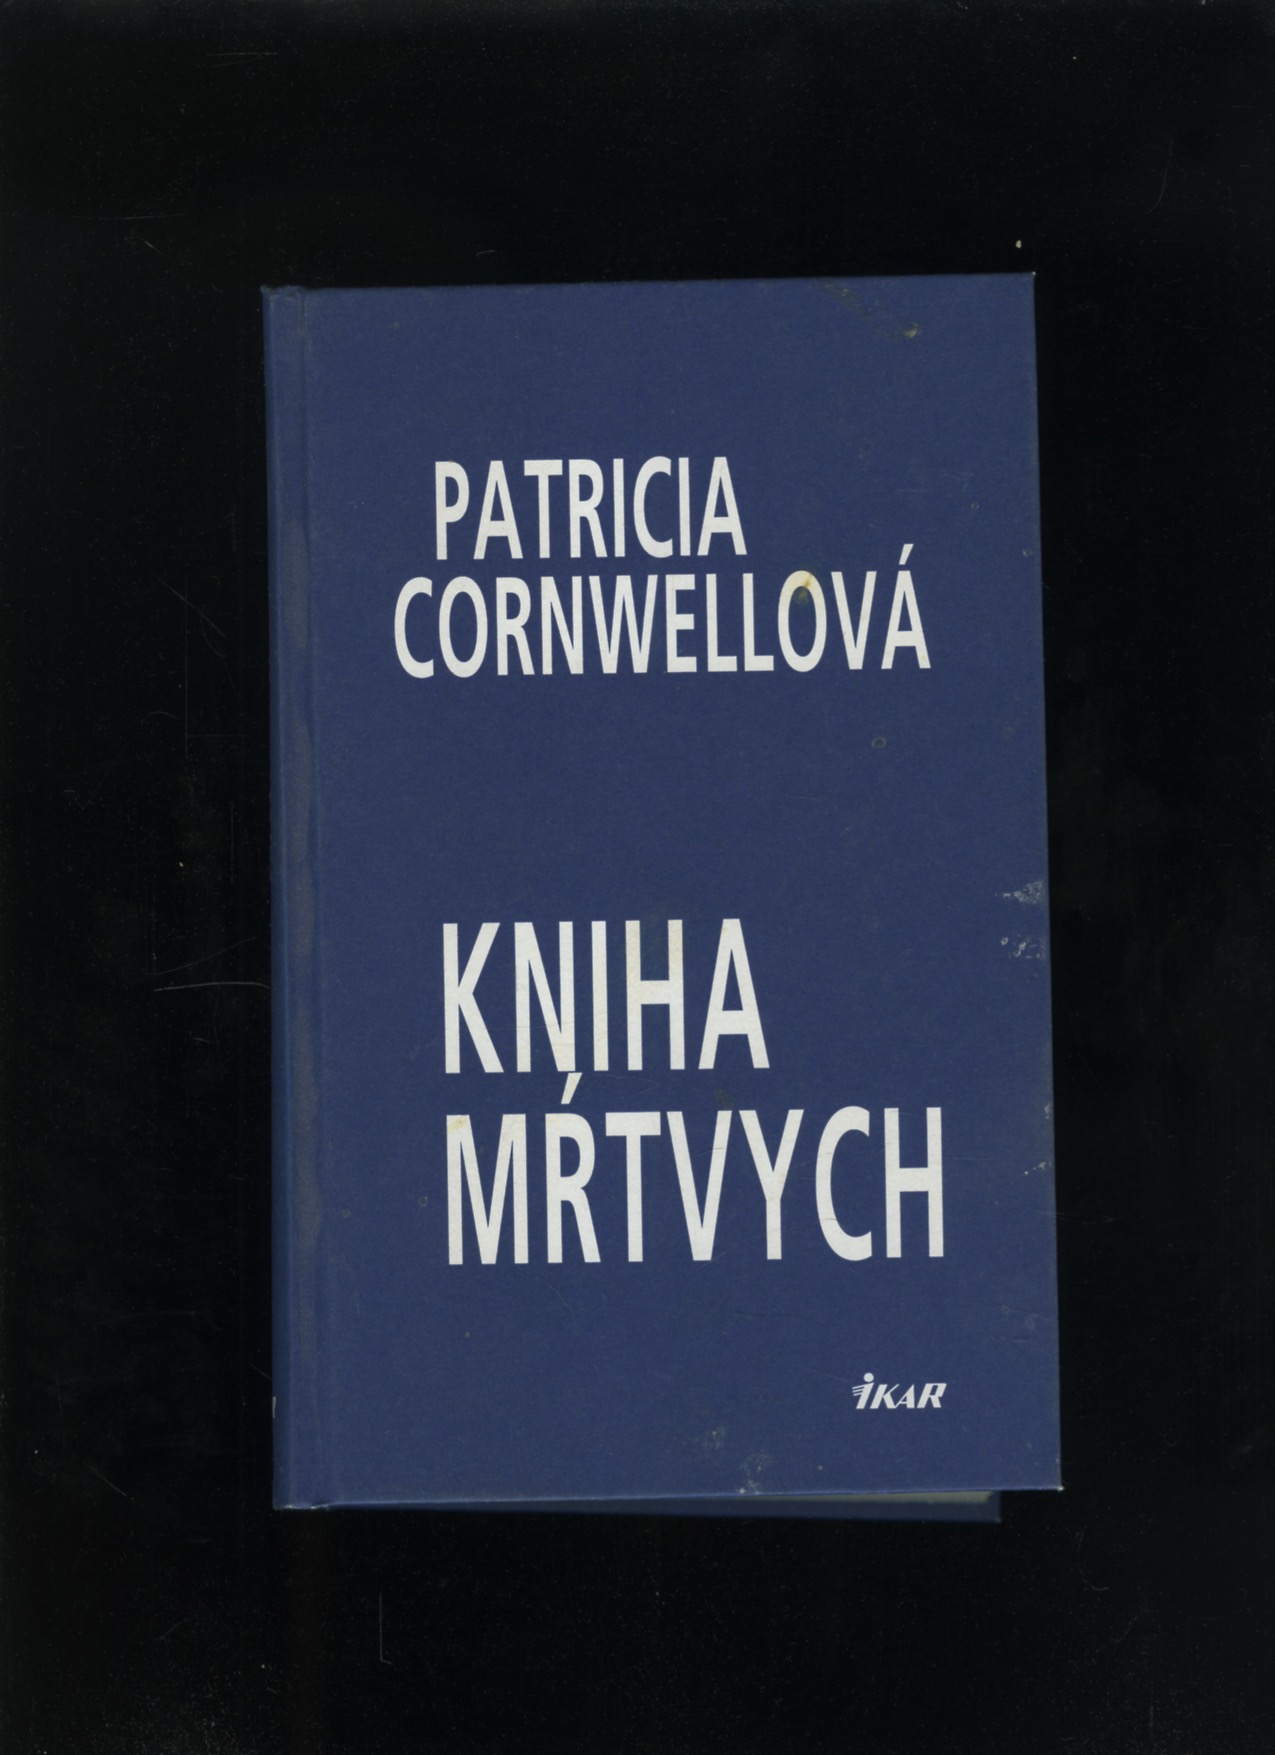 Kniha mŕtvych (Patricia Cornwellová)